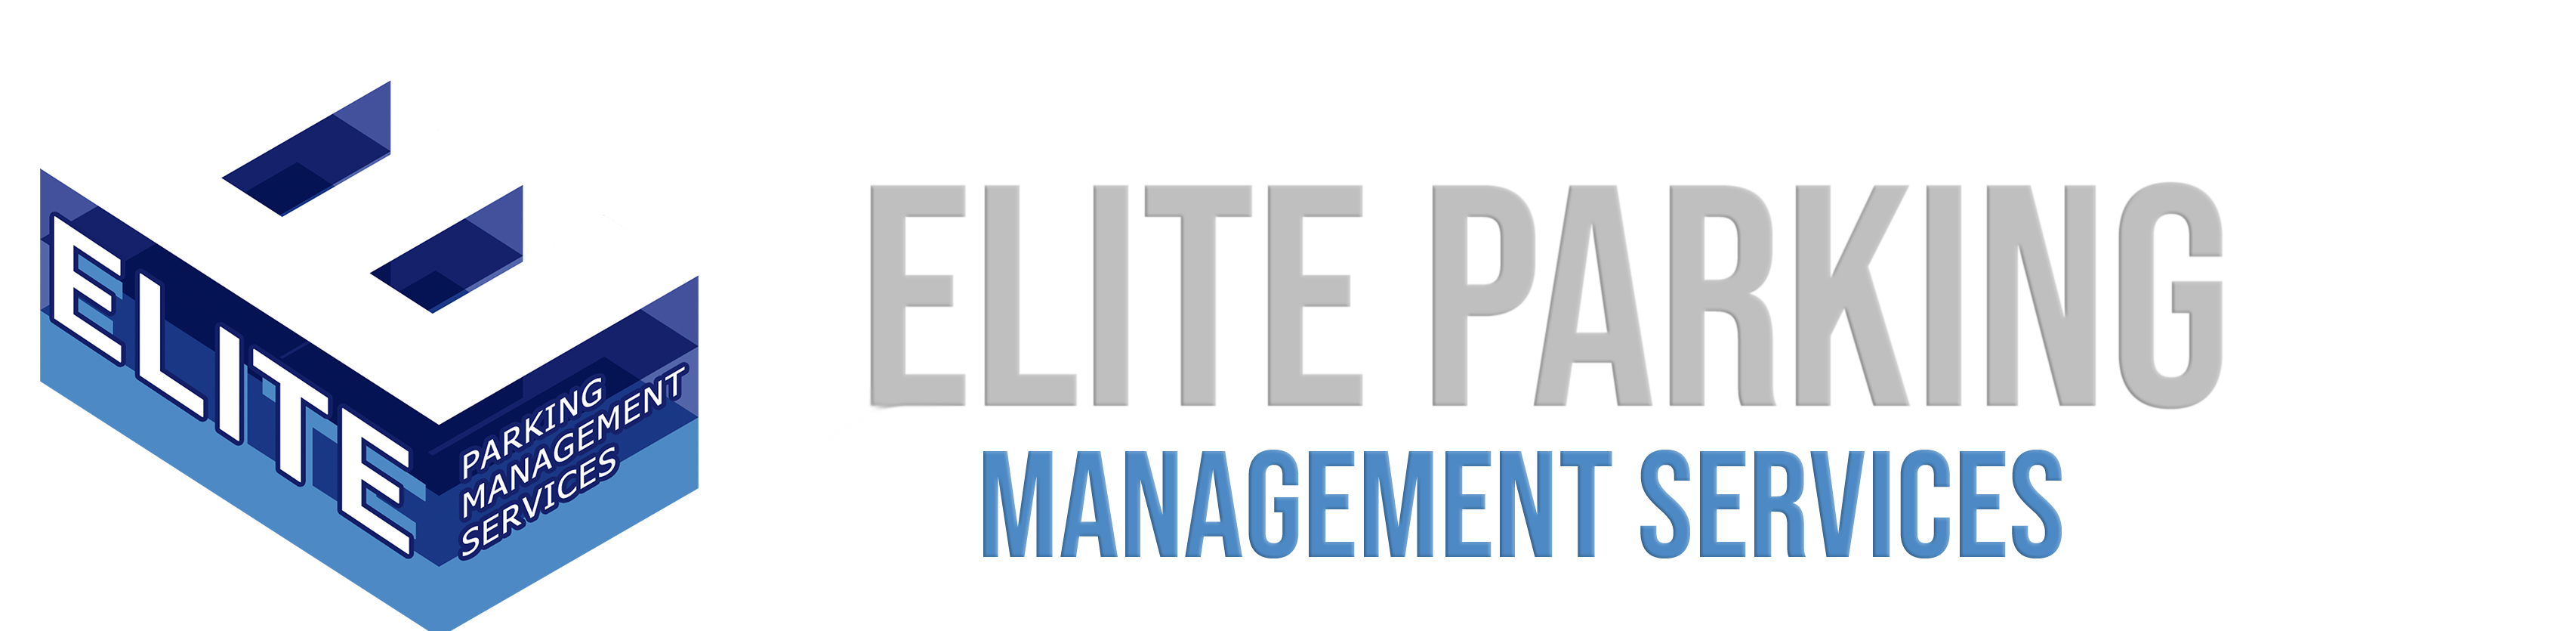 Elite Parking Management Services